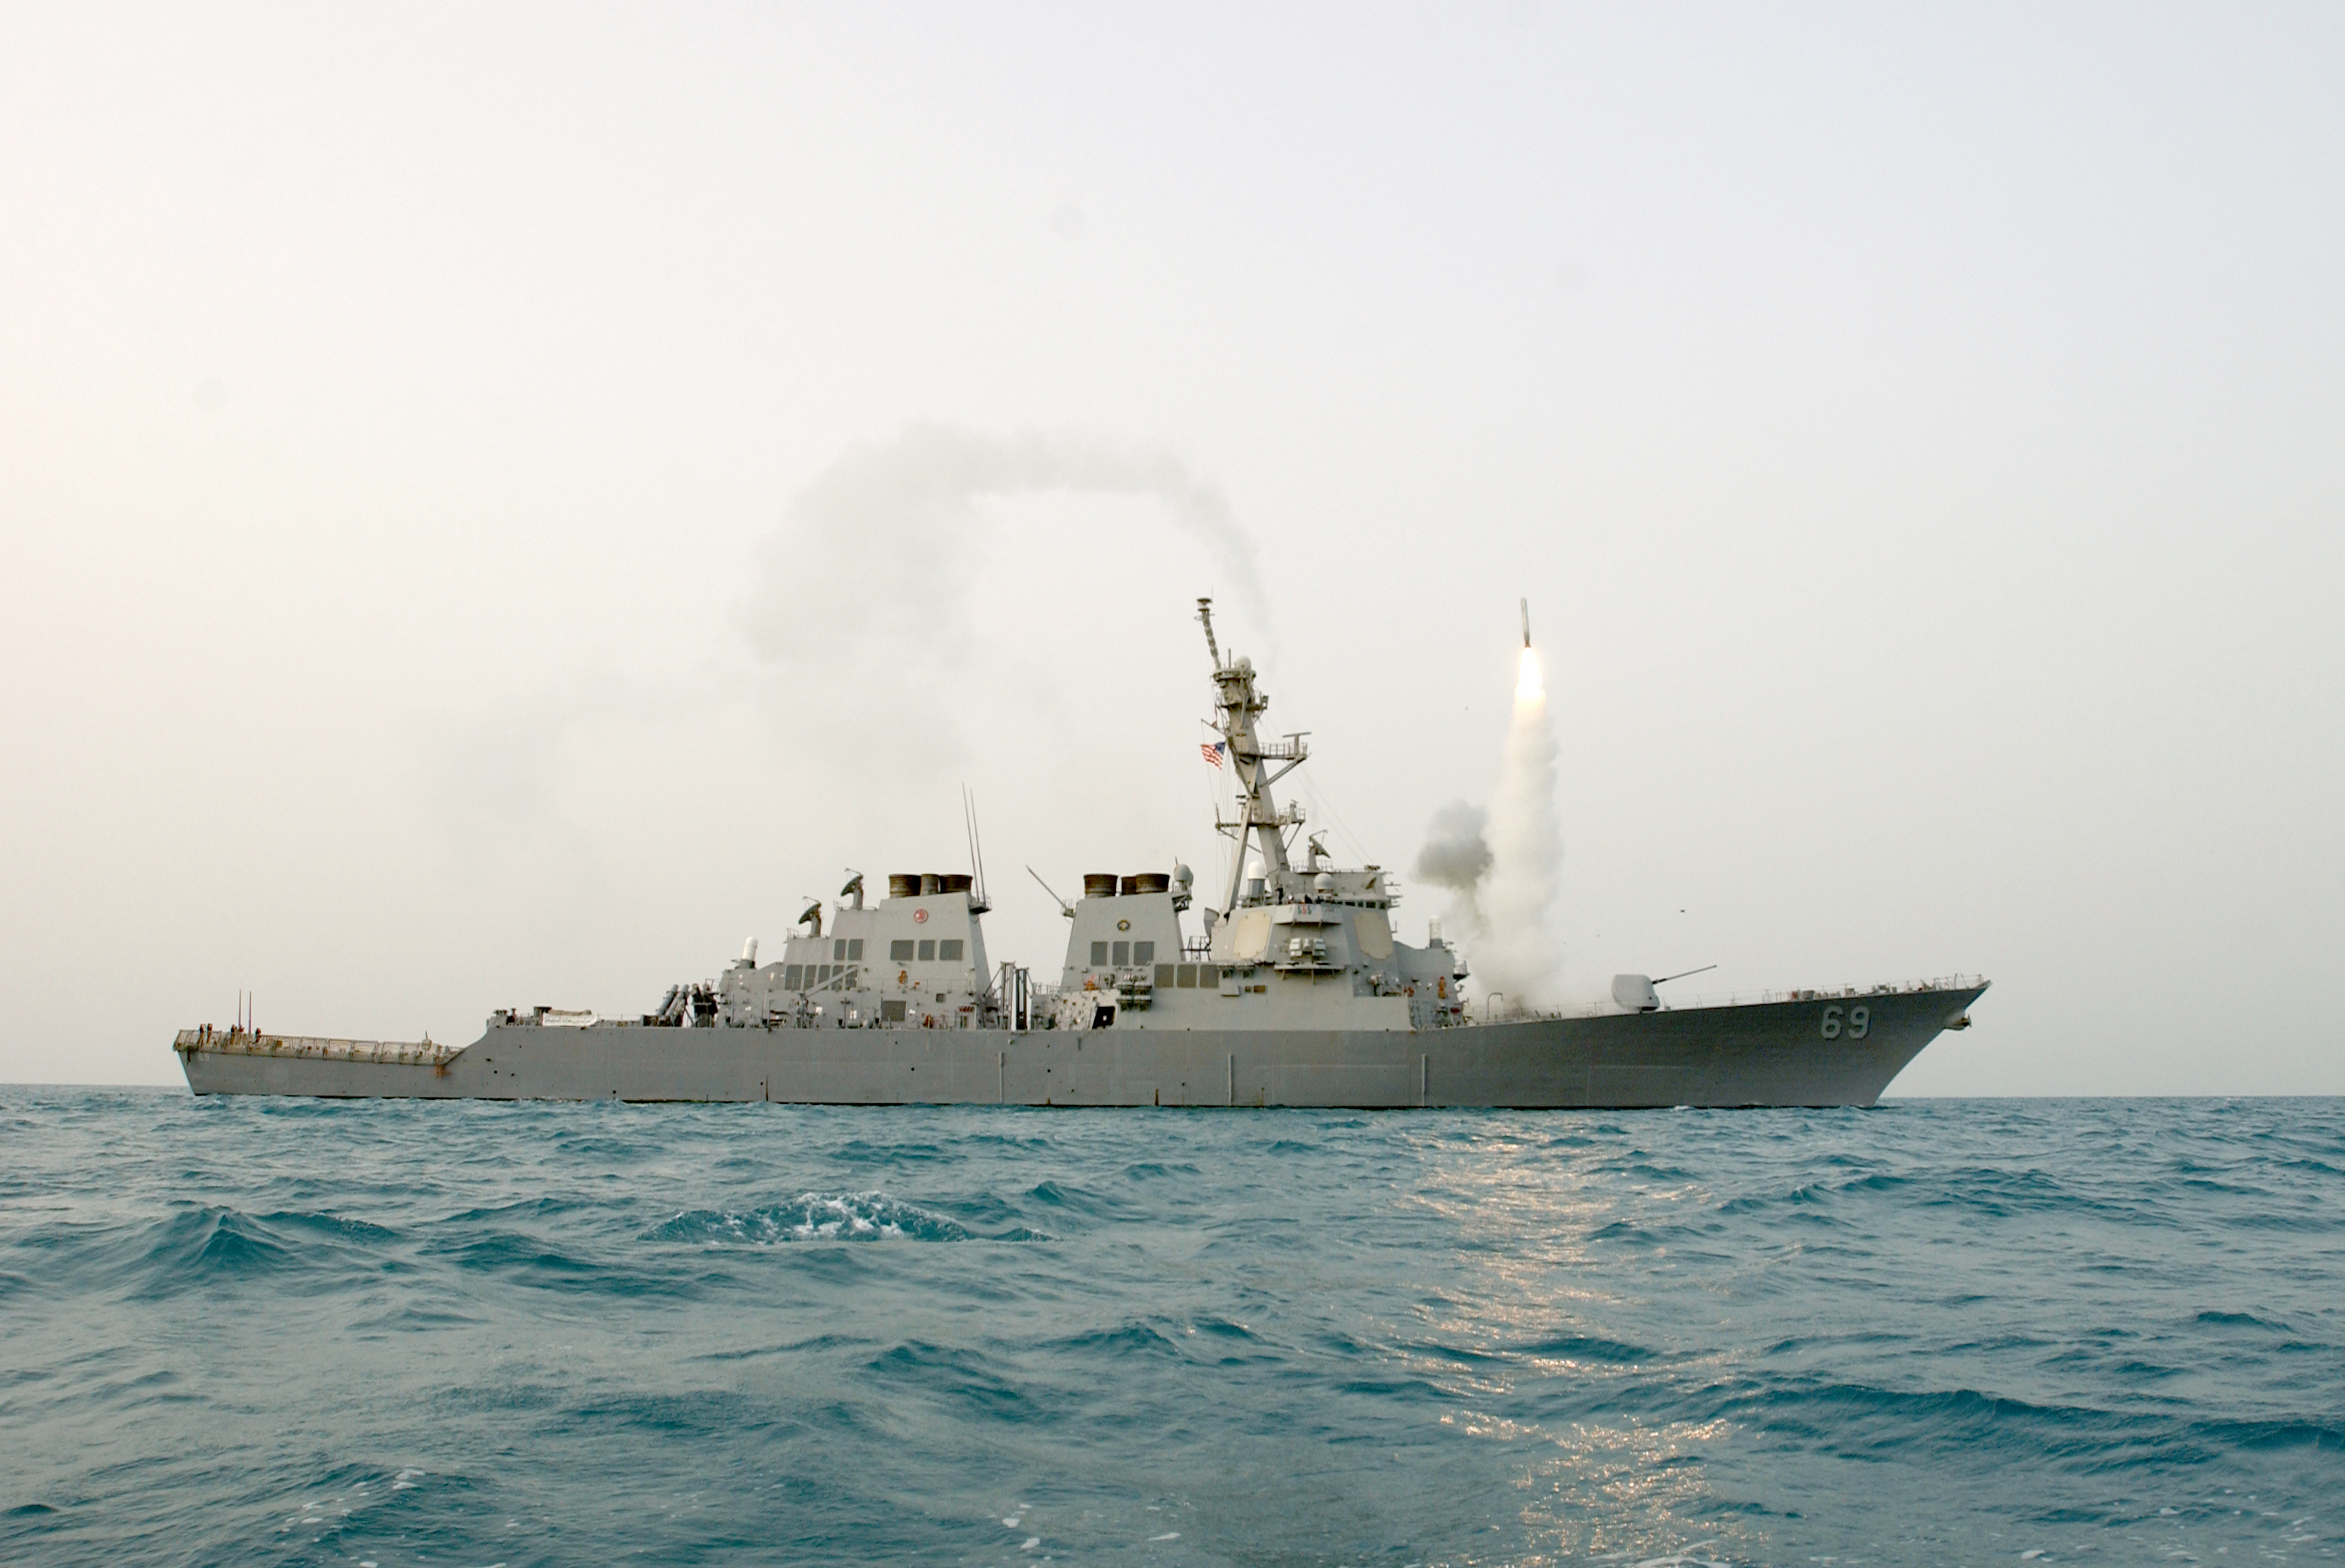 Çin ile ABD arasında savaş gemisi gerginliği